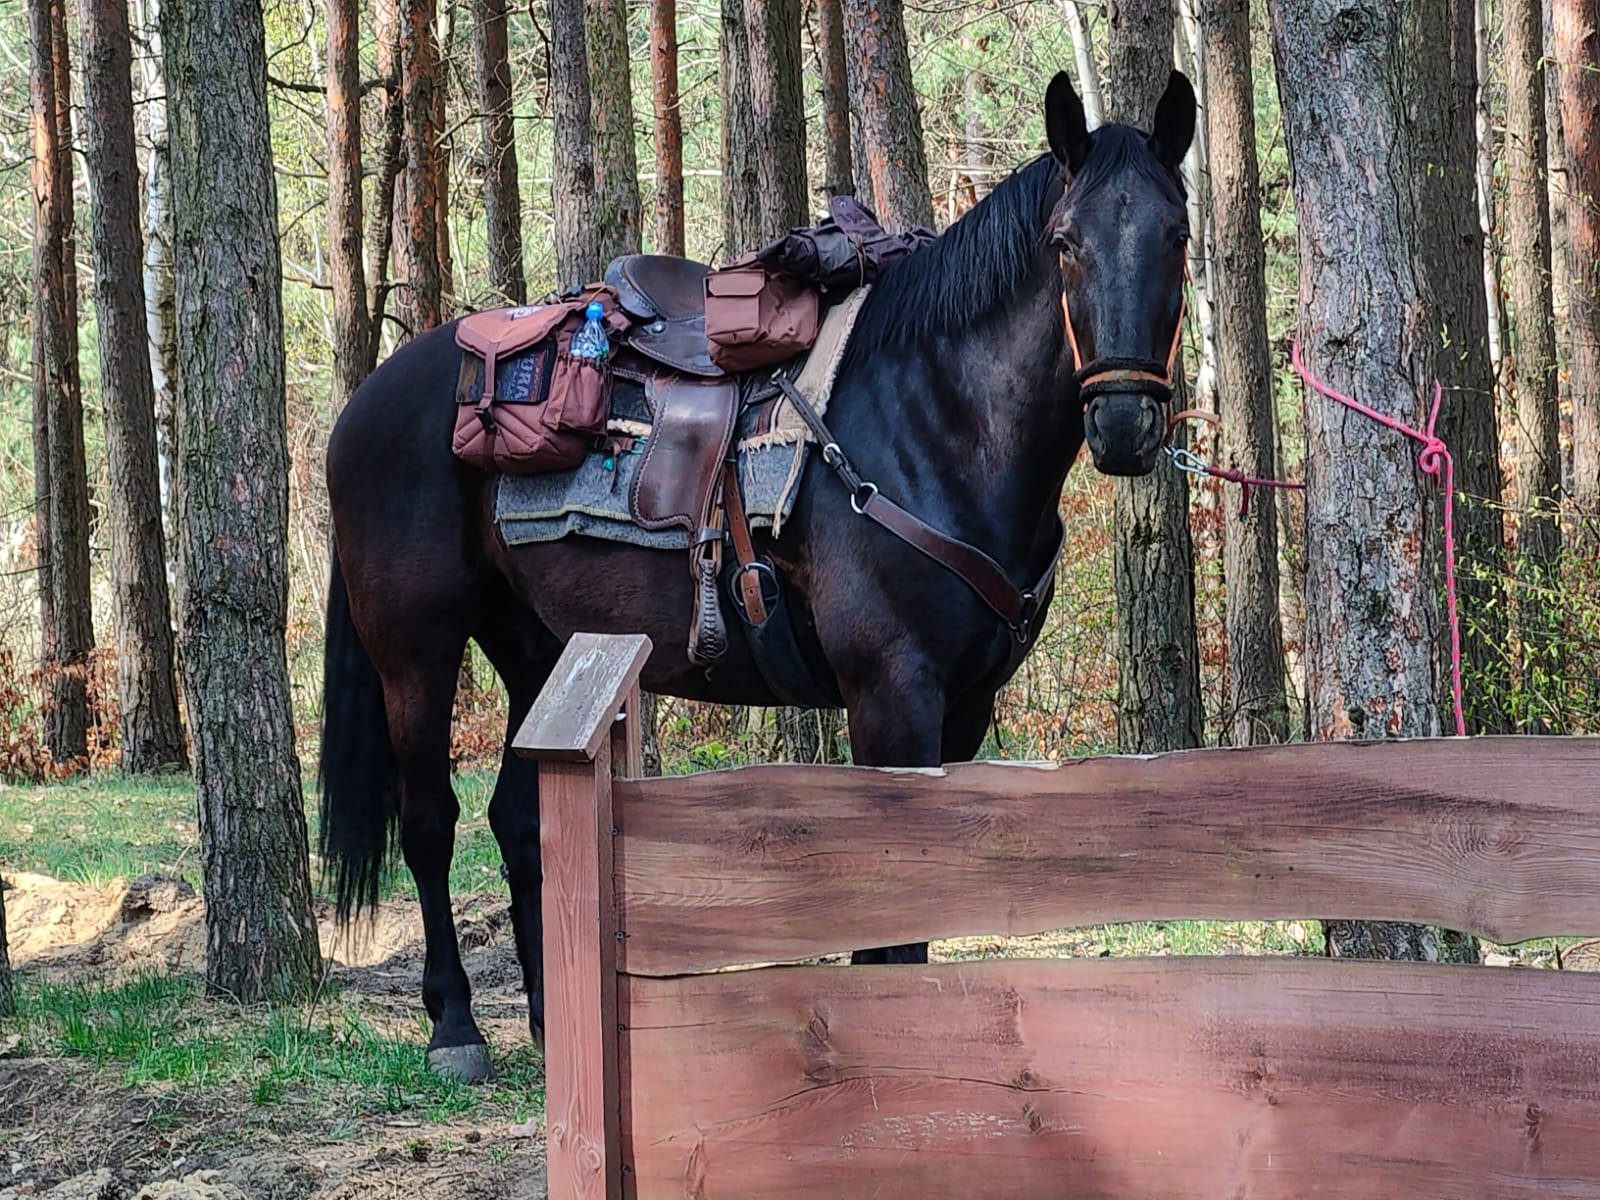 koń kary na szlaku przywiazany do drzewa z przytroczonymi do siodla sakwami, przy ktorych widac mape jury krakowsko-czestochowskiej oraz butelke wody